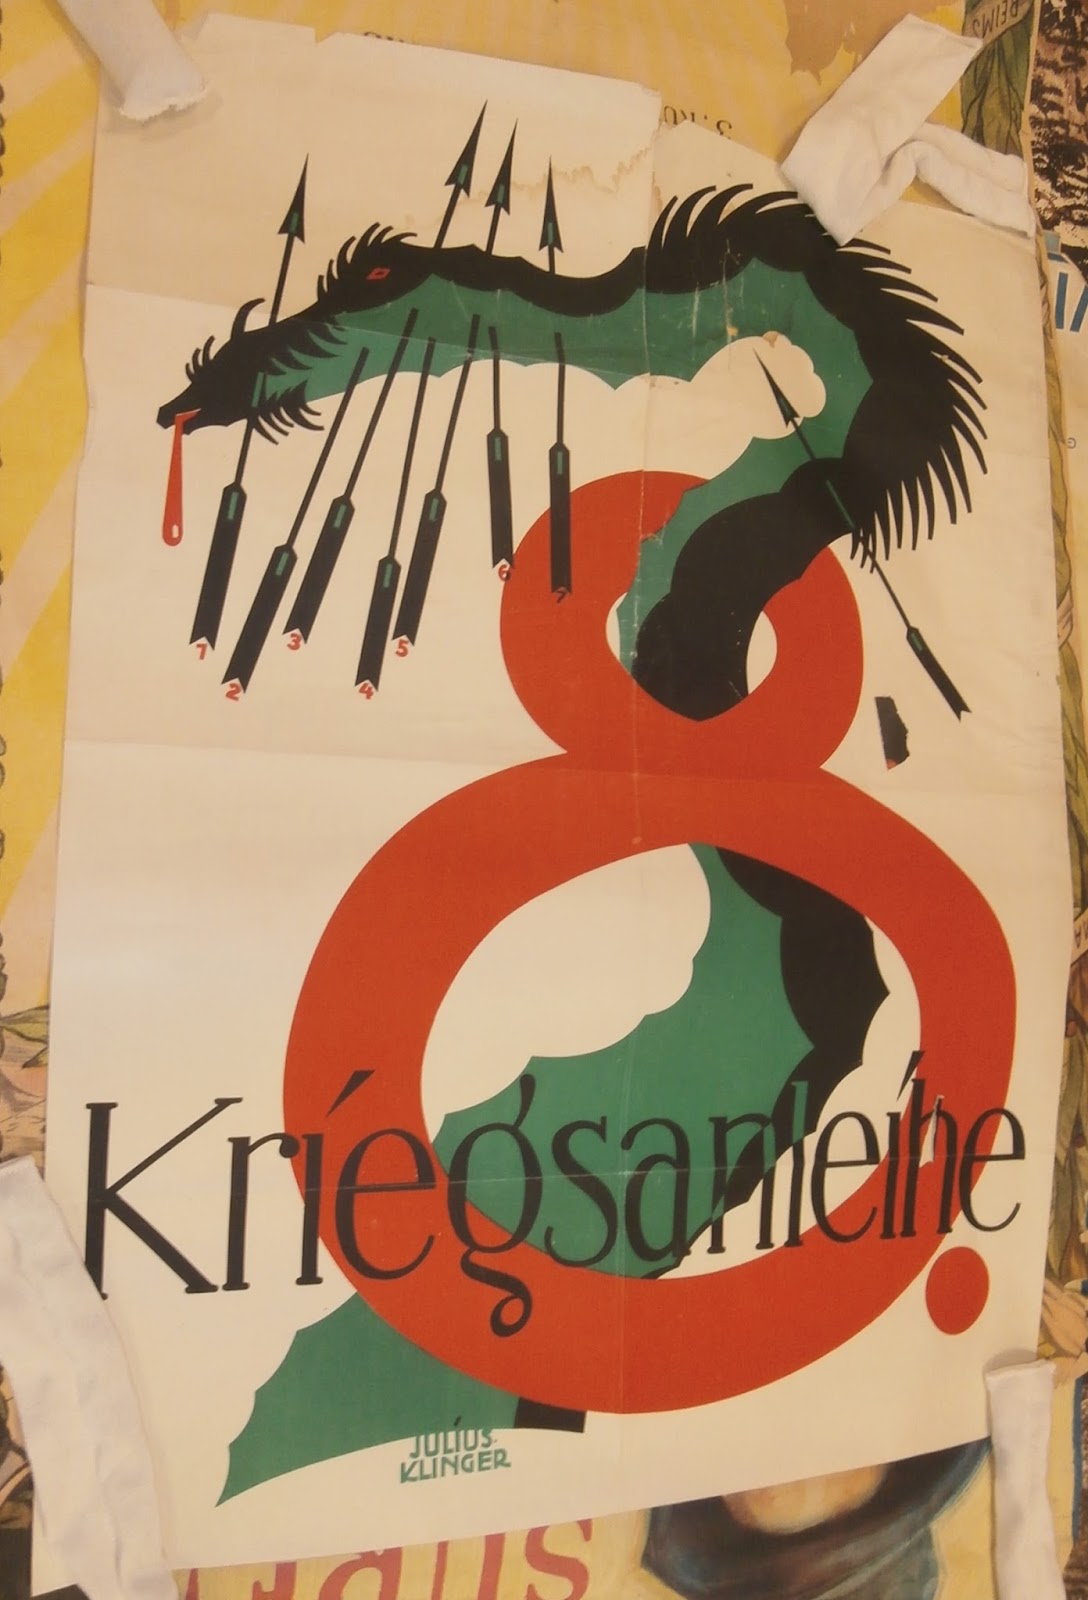 A German poster featuring the term “Kriegsanleihe,” or “war loan.”